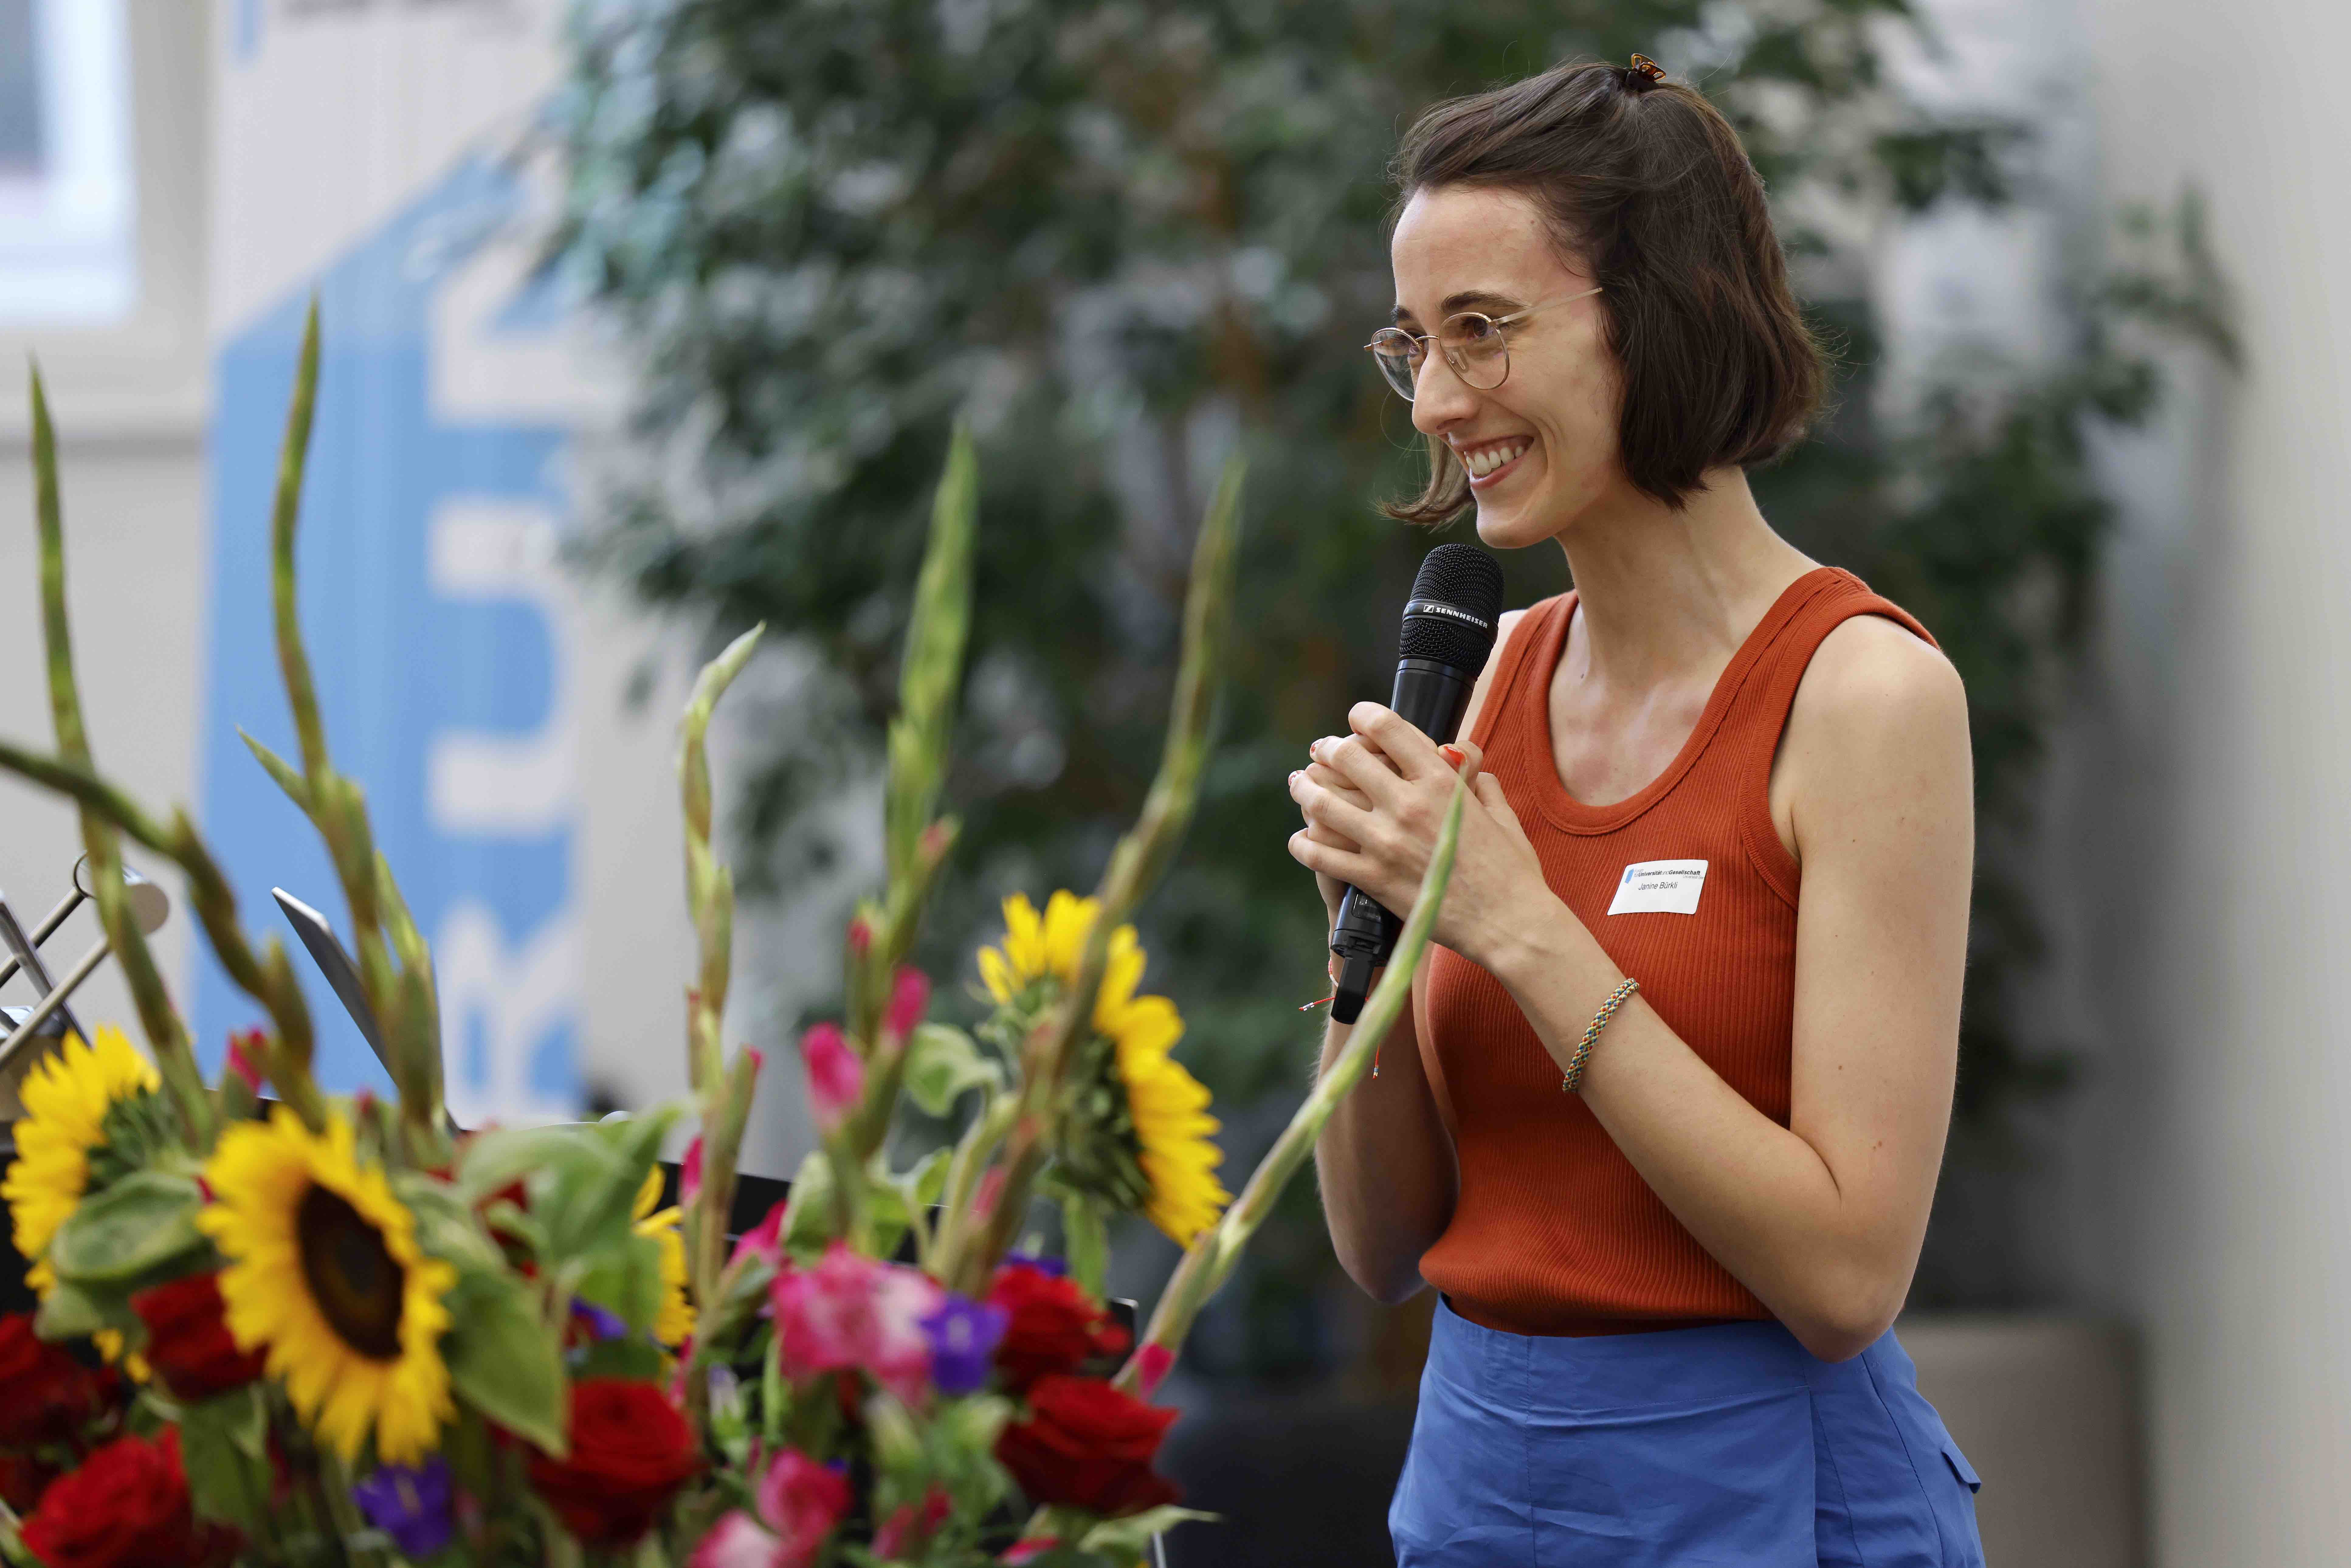 Die Referentin Janine Bürkli spricht in ein Handmikrofon und lacht. Im Hintergrund sind ein Blumenstrauss, grüne Zimmerpflanzen und ein blauweisses Banner mit dem Forumslogo erkennbar.